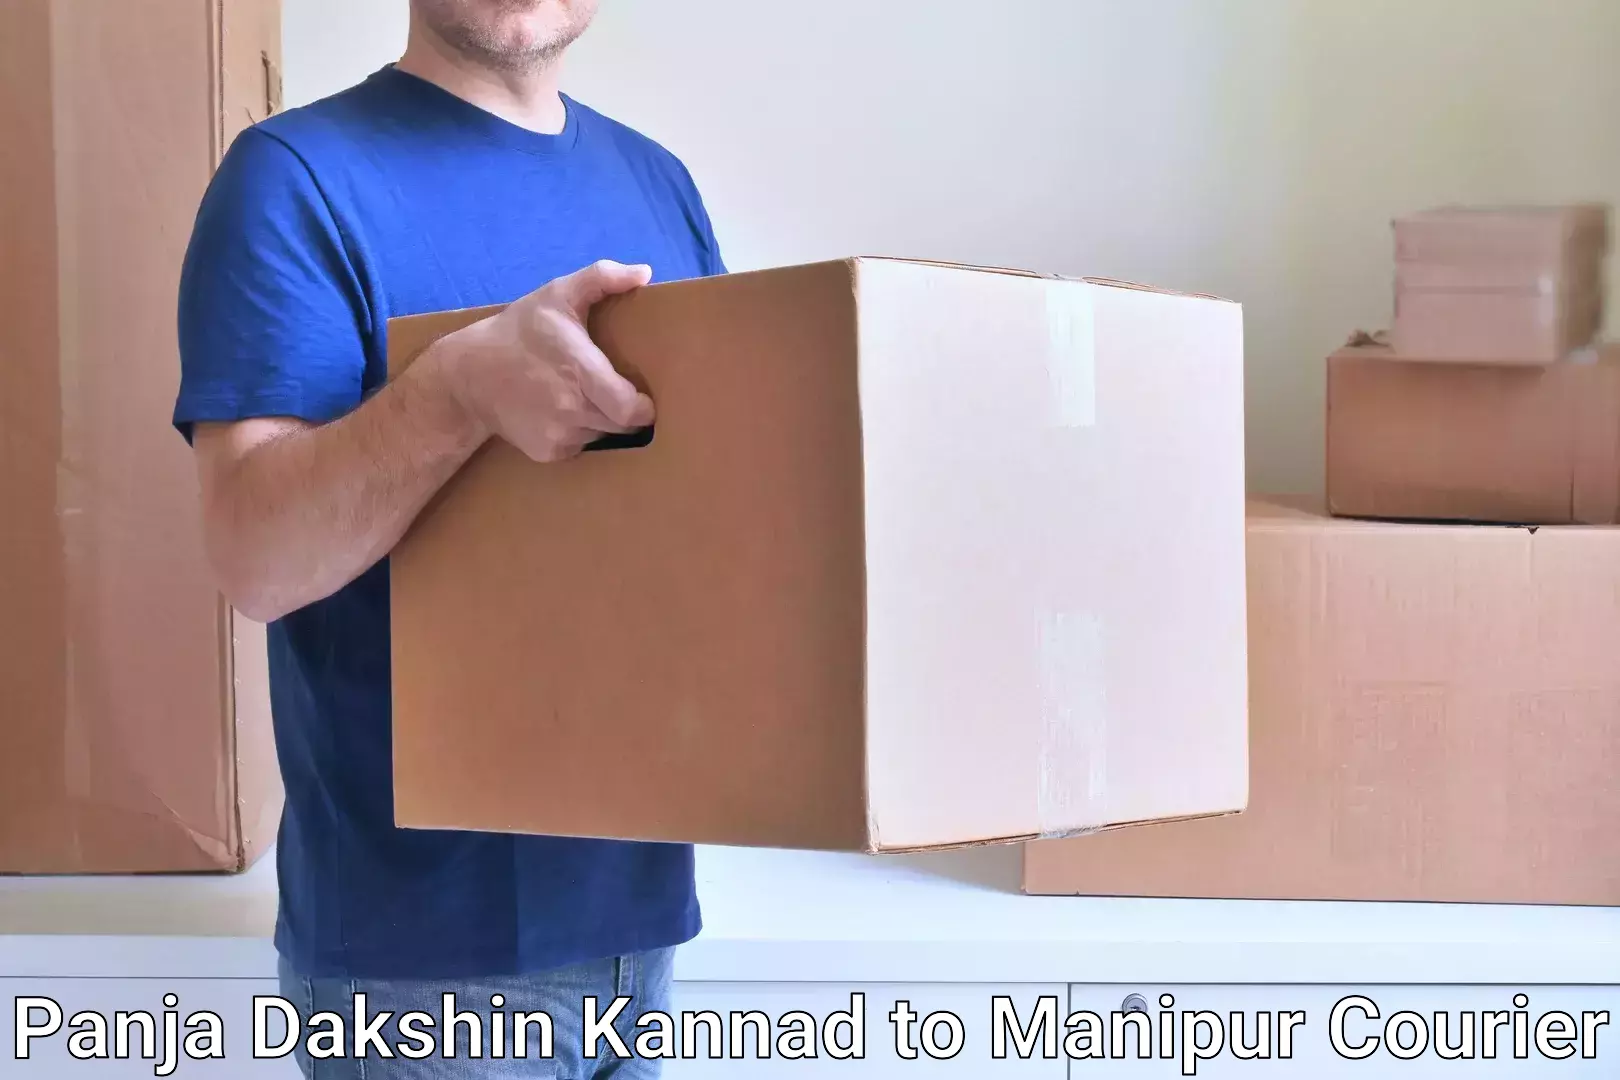 Affordable parcel service Panja Dakshin Kannad to Ukhrul